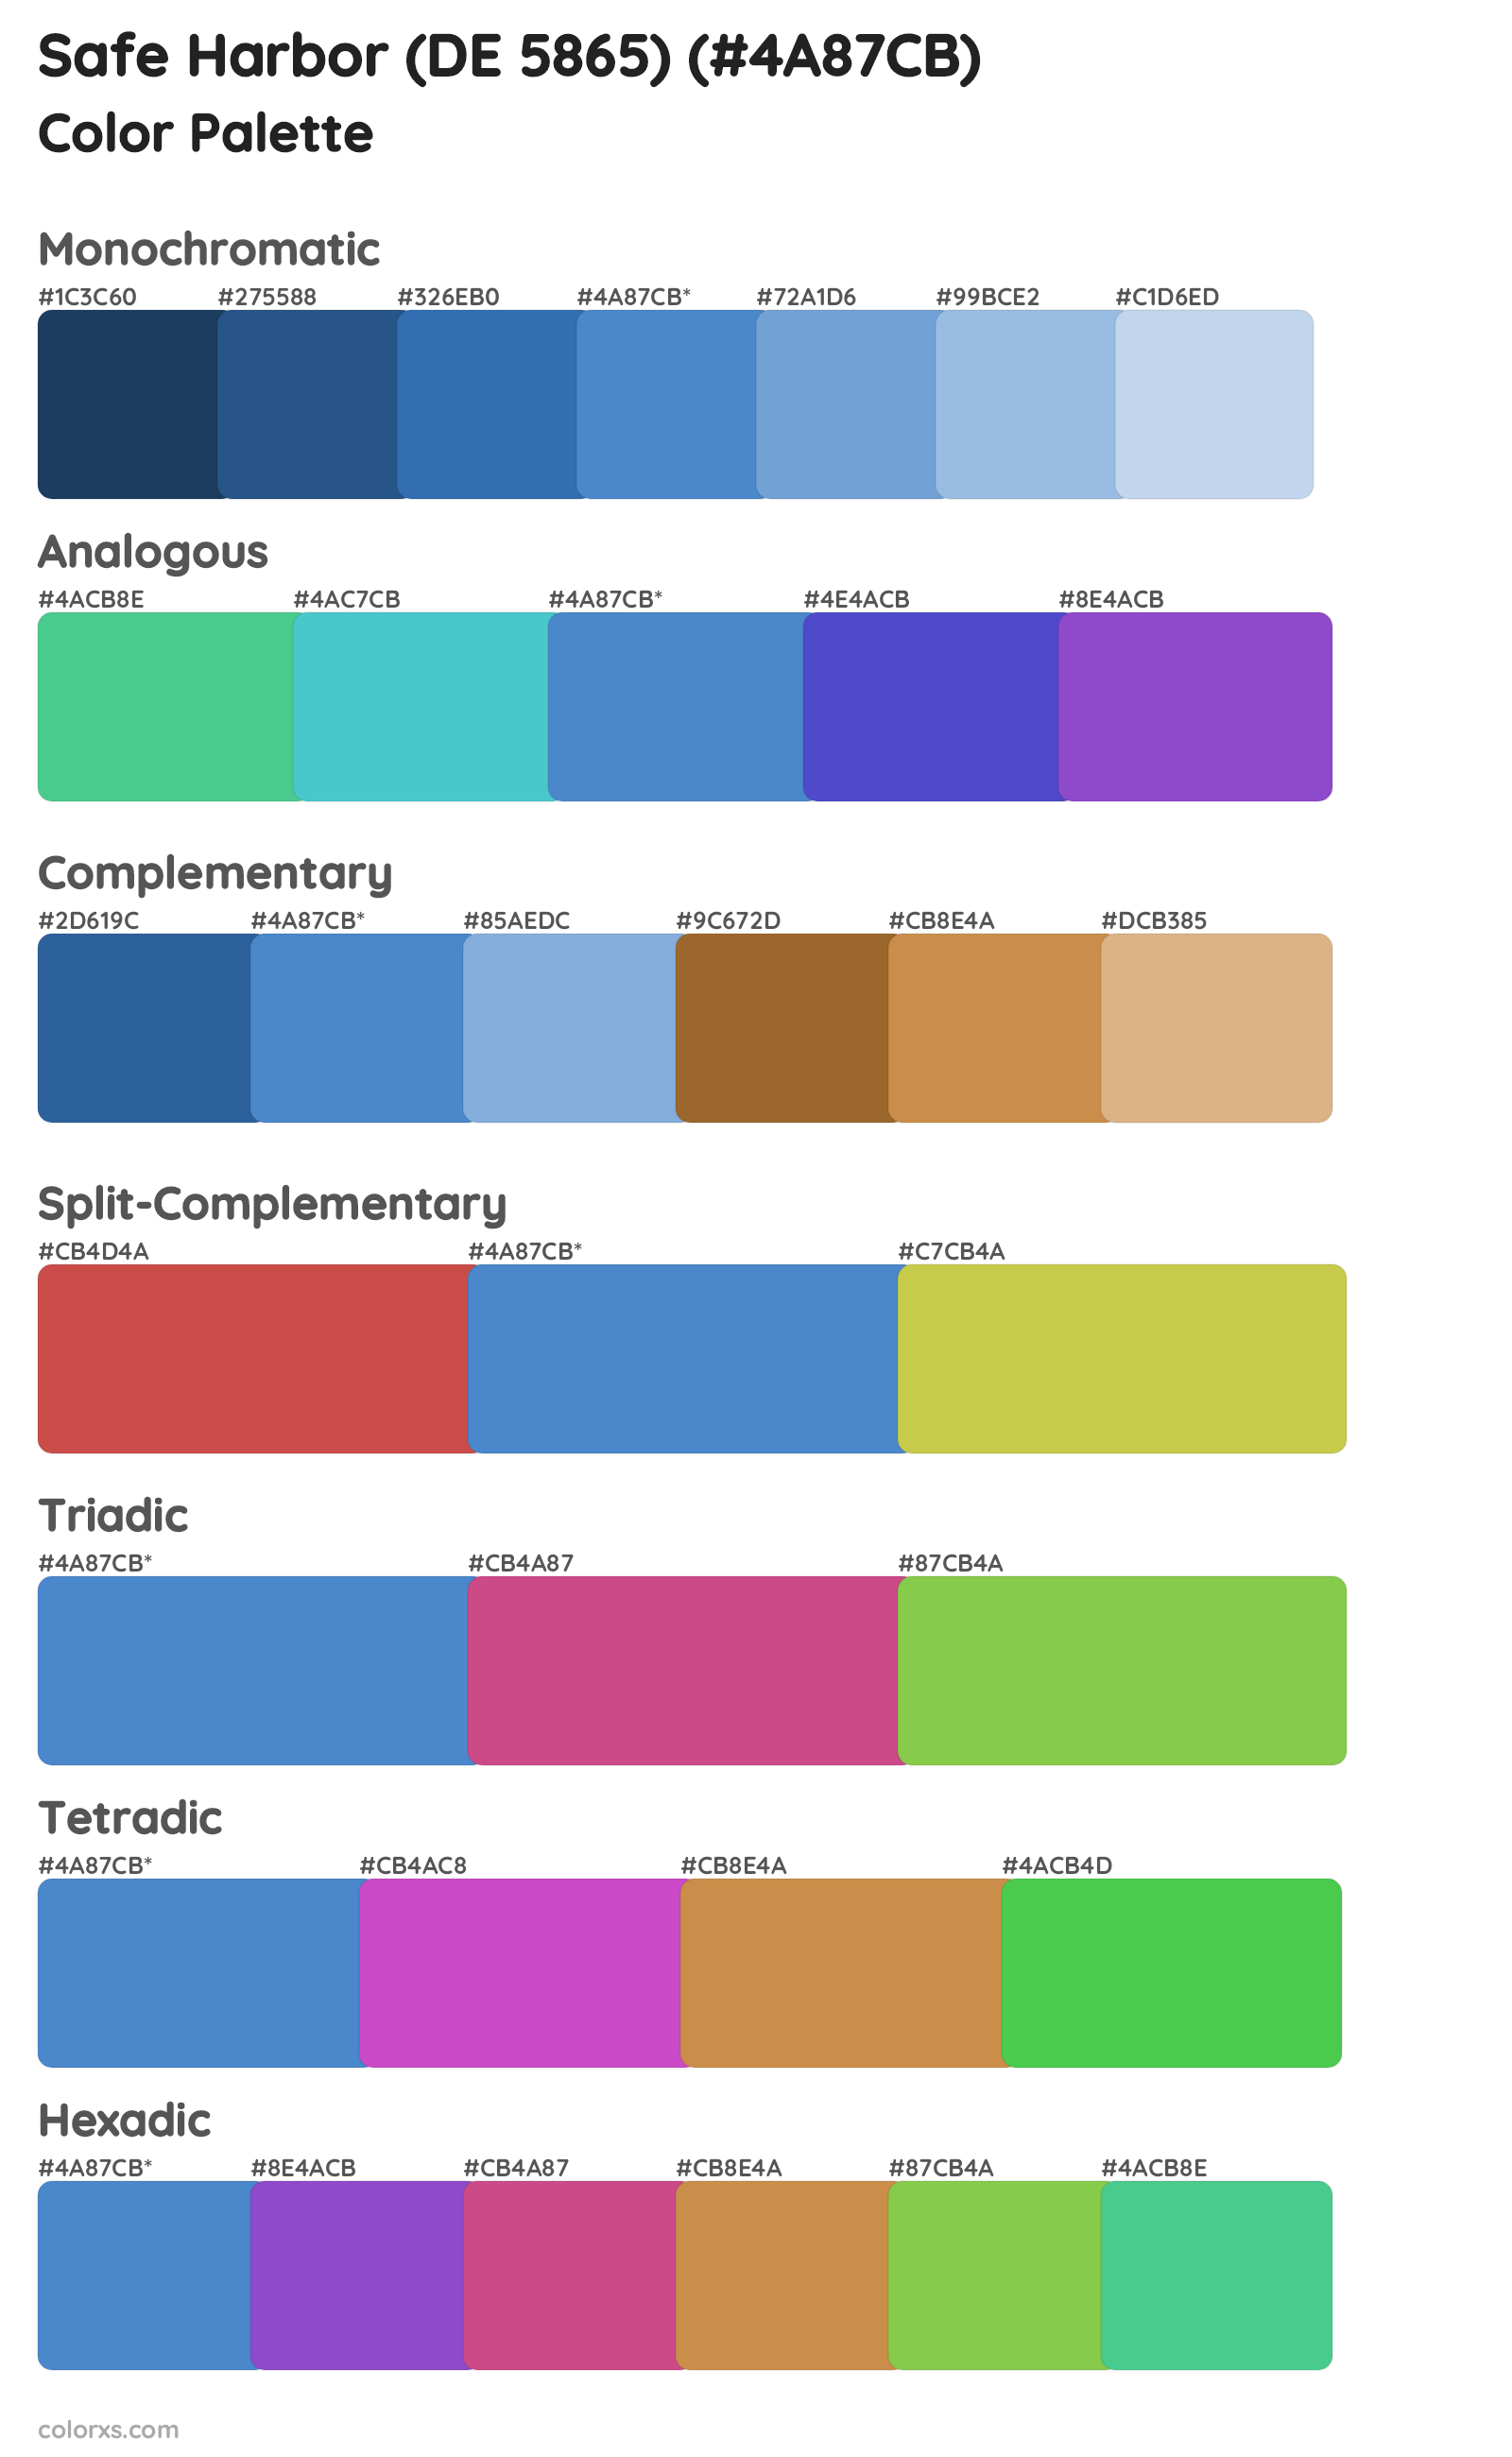 Safe Harbor (DE 5865) Color Scheme Palettes